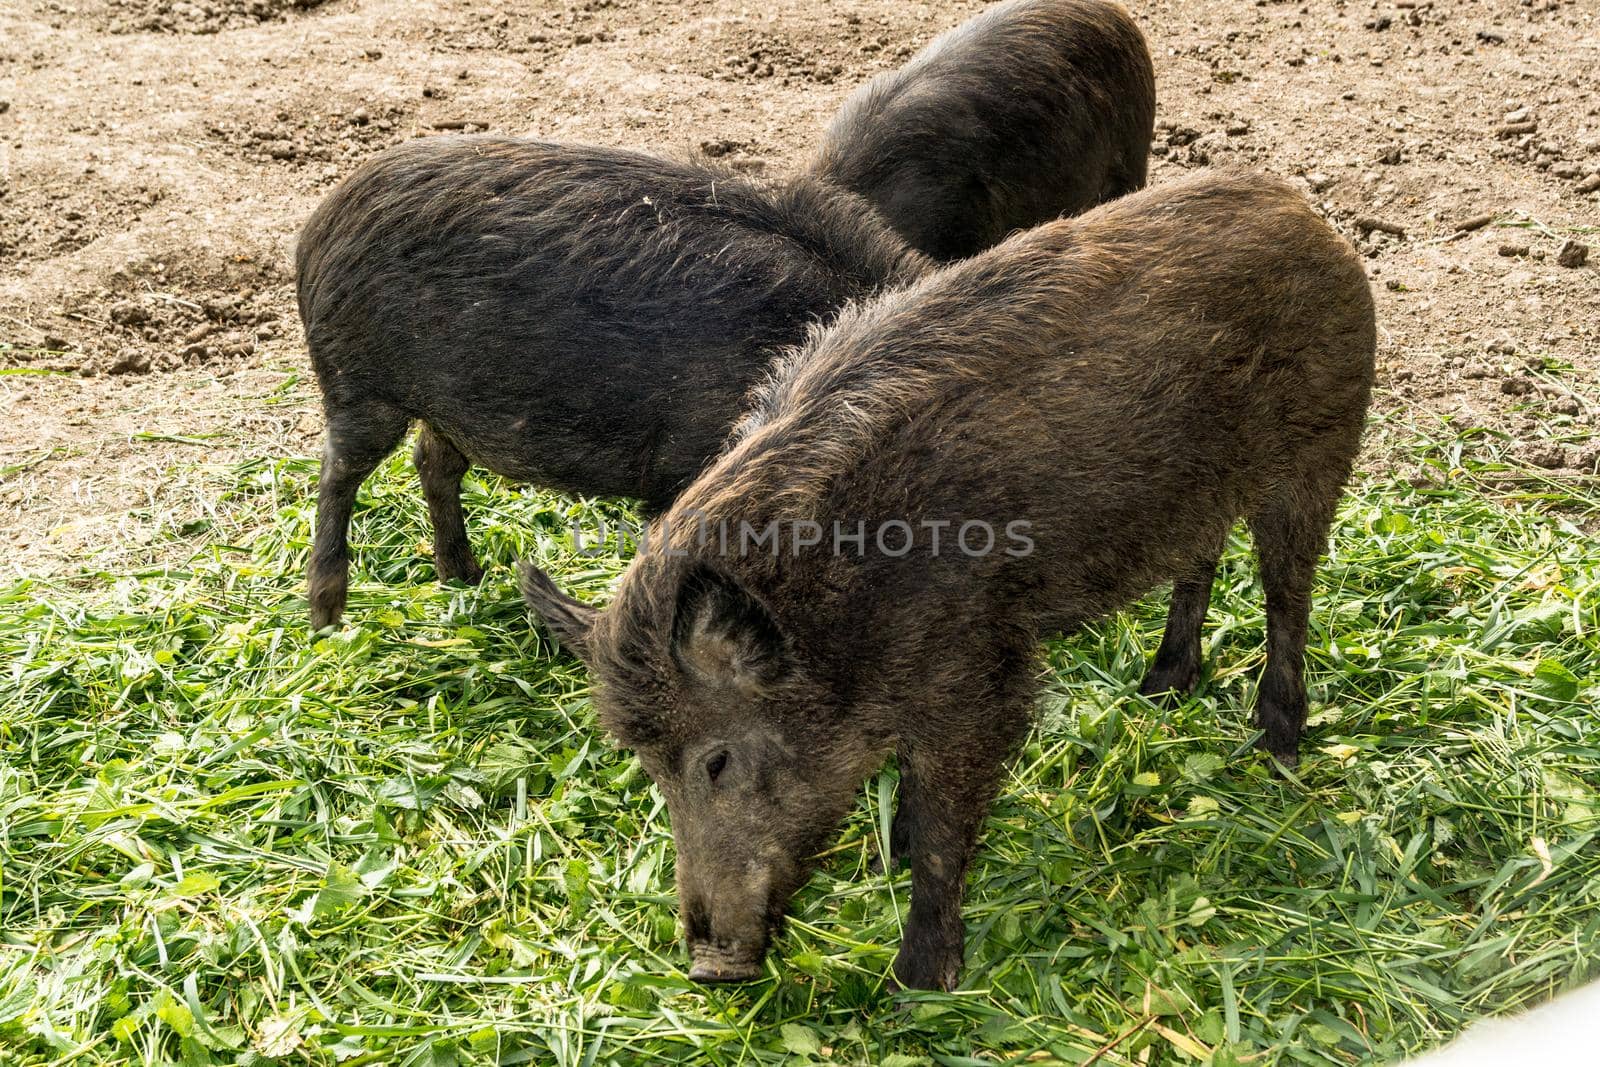 Three wild pigs are eating green plucked grass by Serhii_Voroshchuk